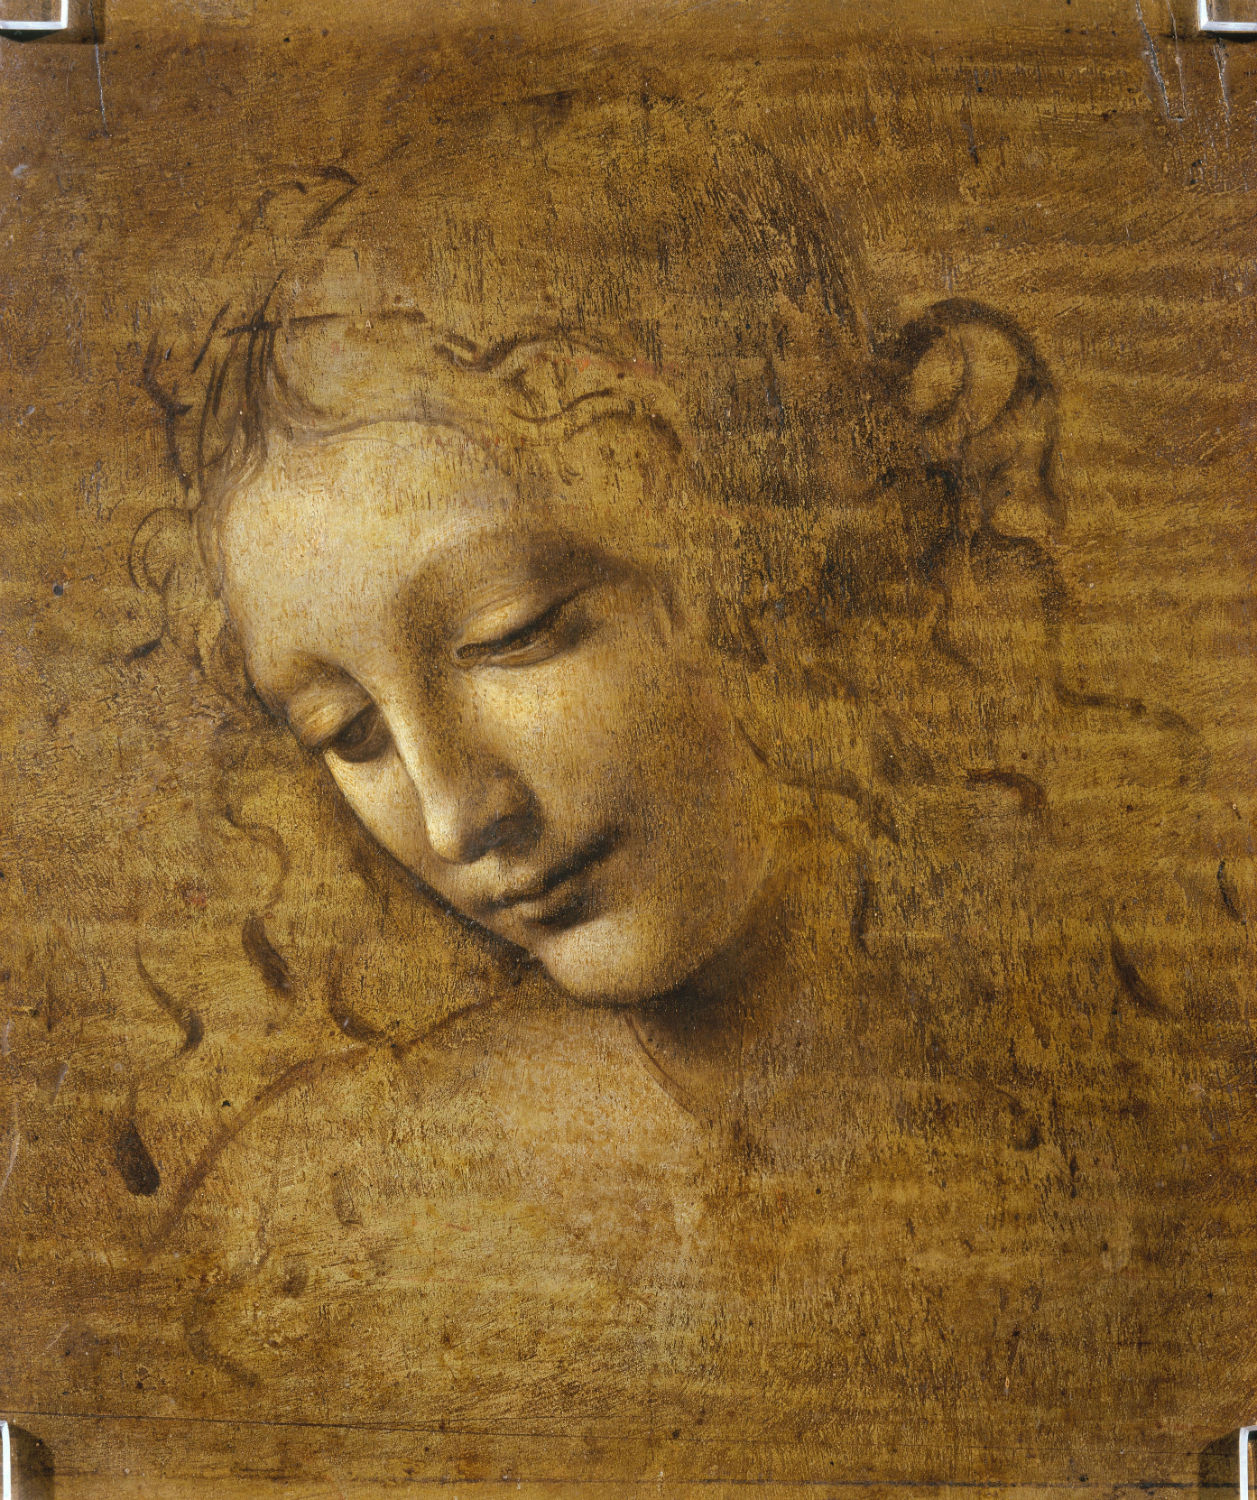 Leonardo da Vinci "Head and Shoulders of a Woman"